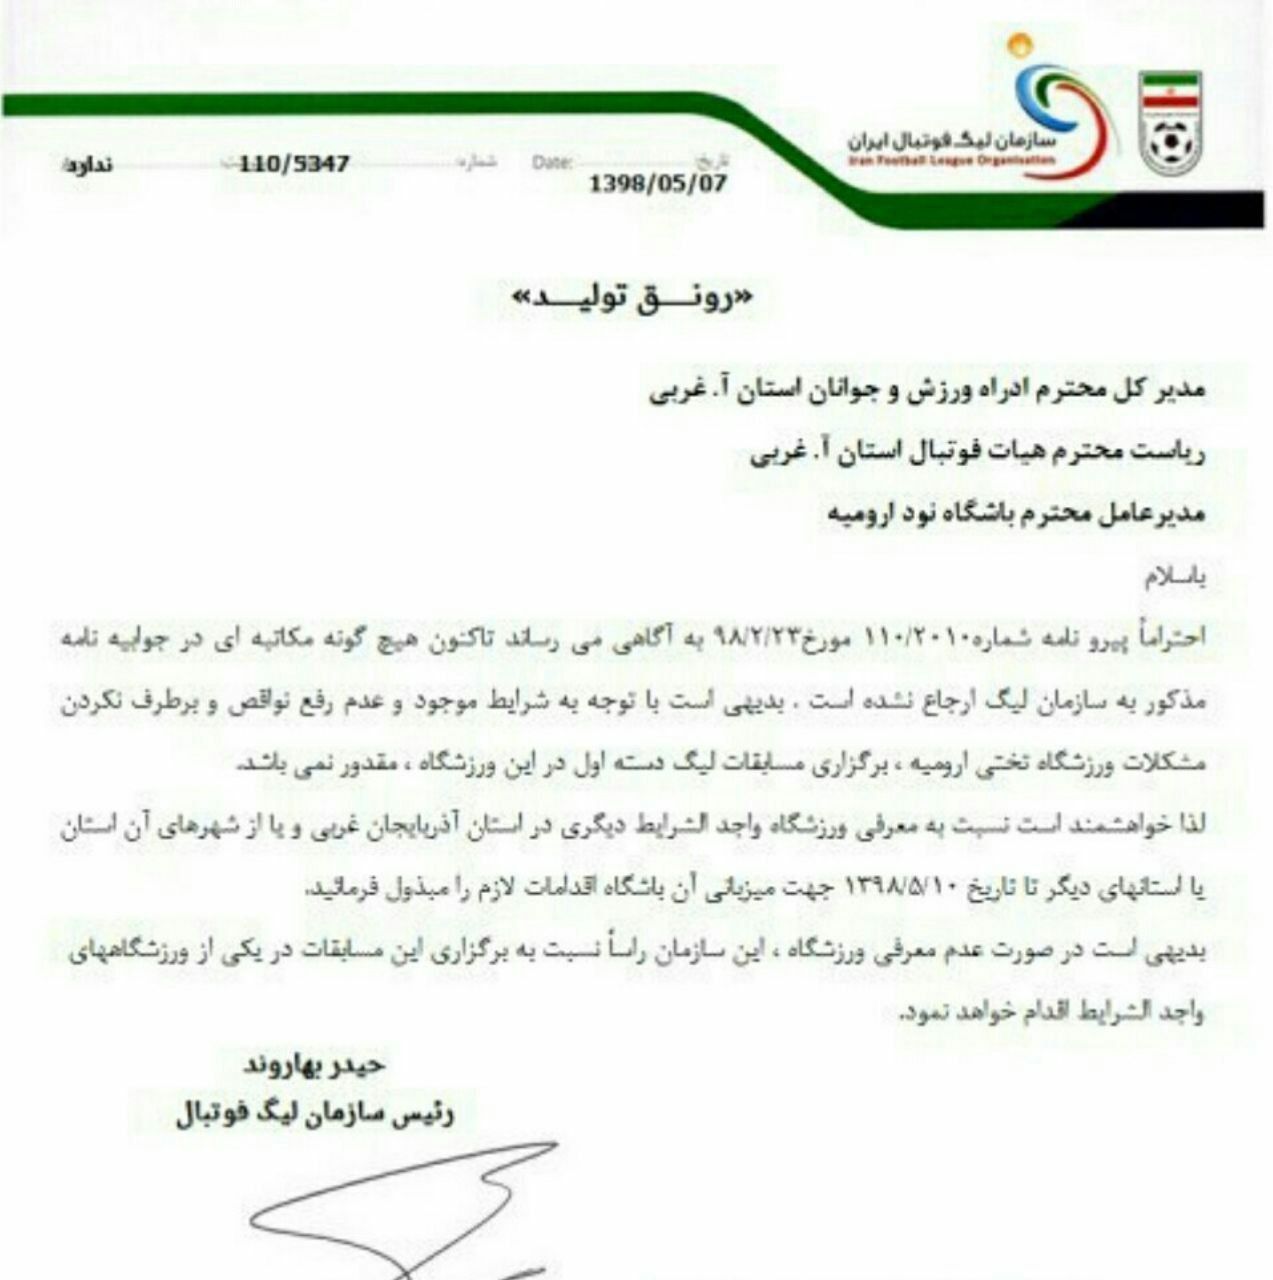 تیم نود اورمیه، به علت عدم رفع نواقص استادیوم از میزبانی در لیگ دسته اول محروم شد!